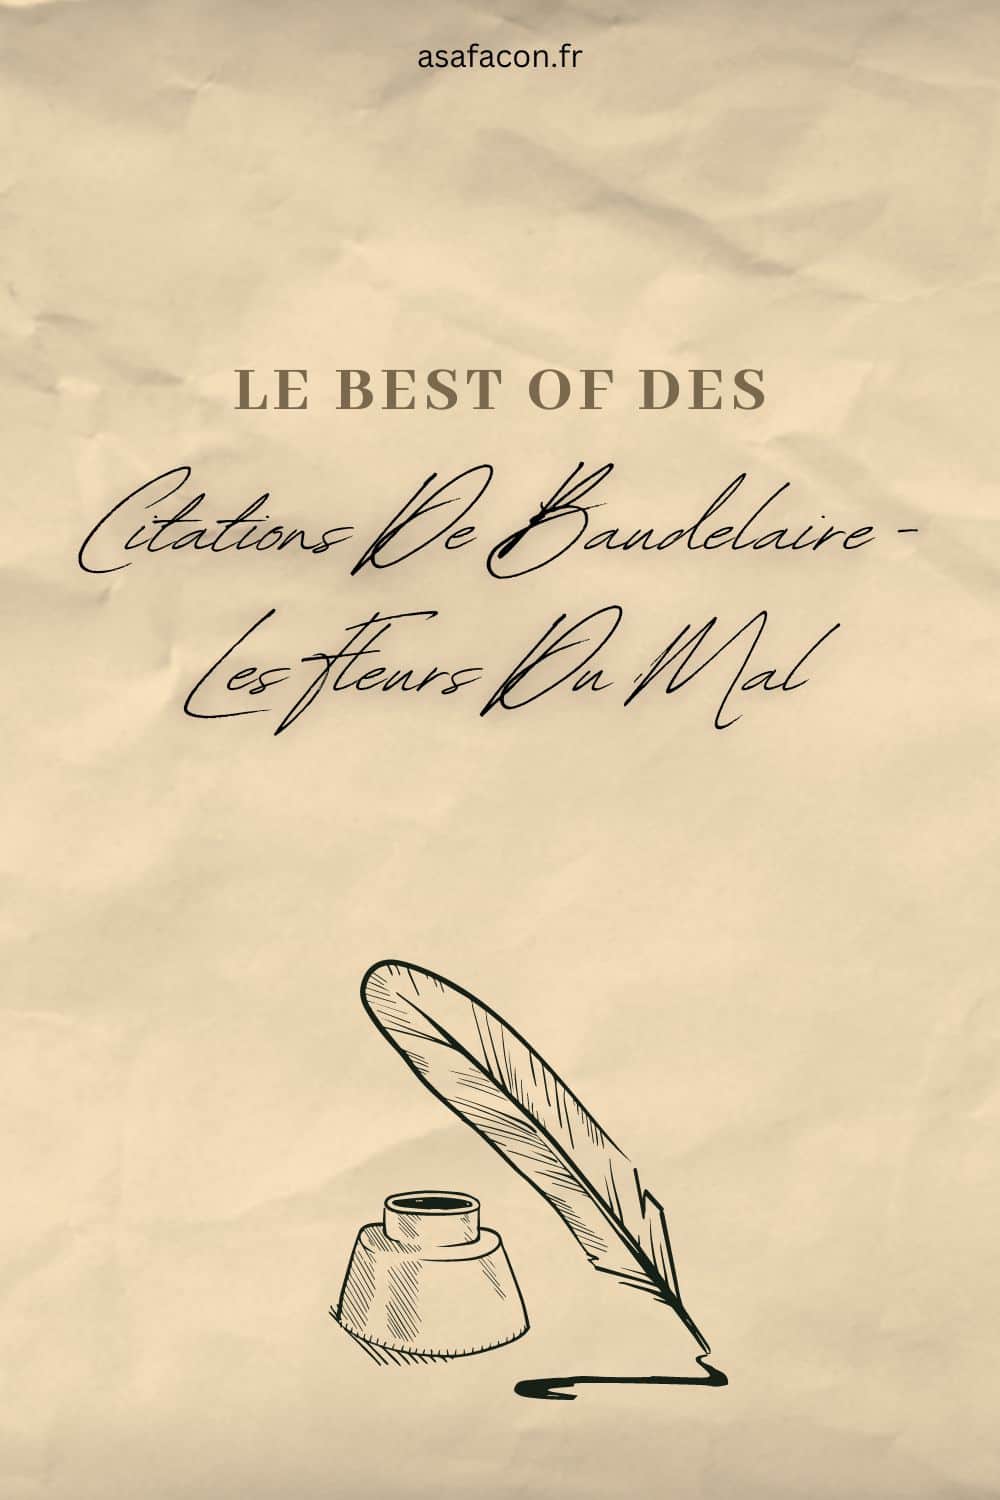 Le Best Of Des Citations De Baudelaire  Les Fleurs Du Mal